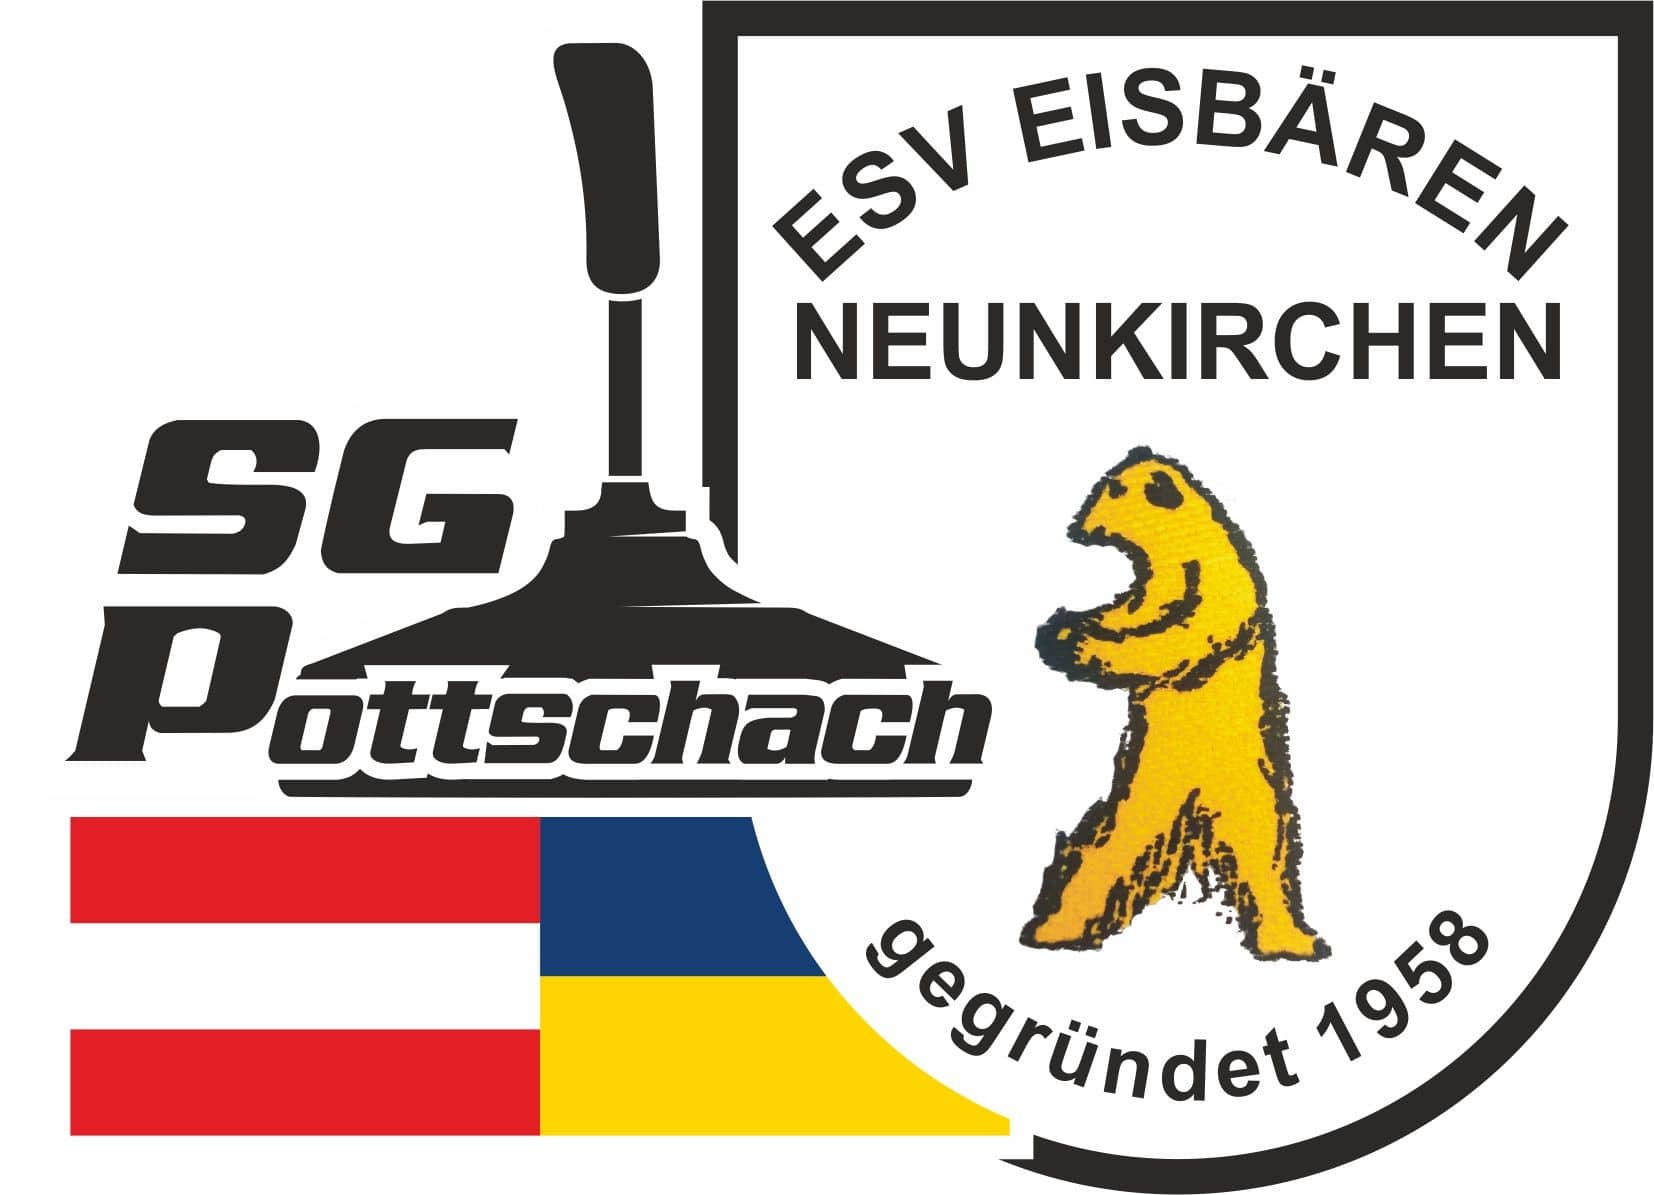 SG Pottschach-Eisbären Neunkirchen (NÖ)